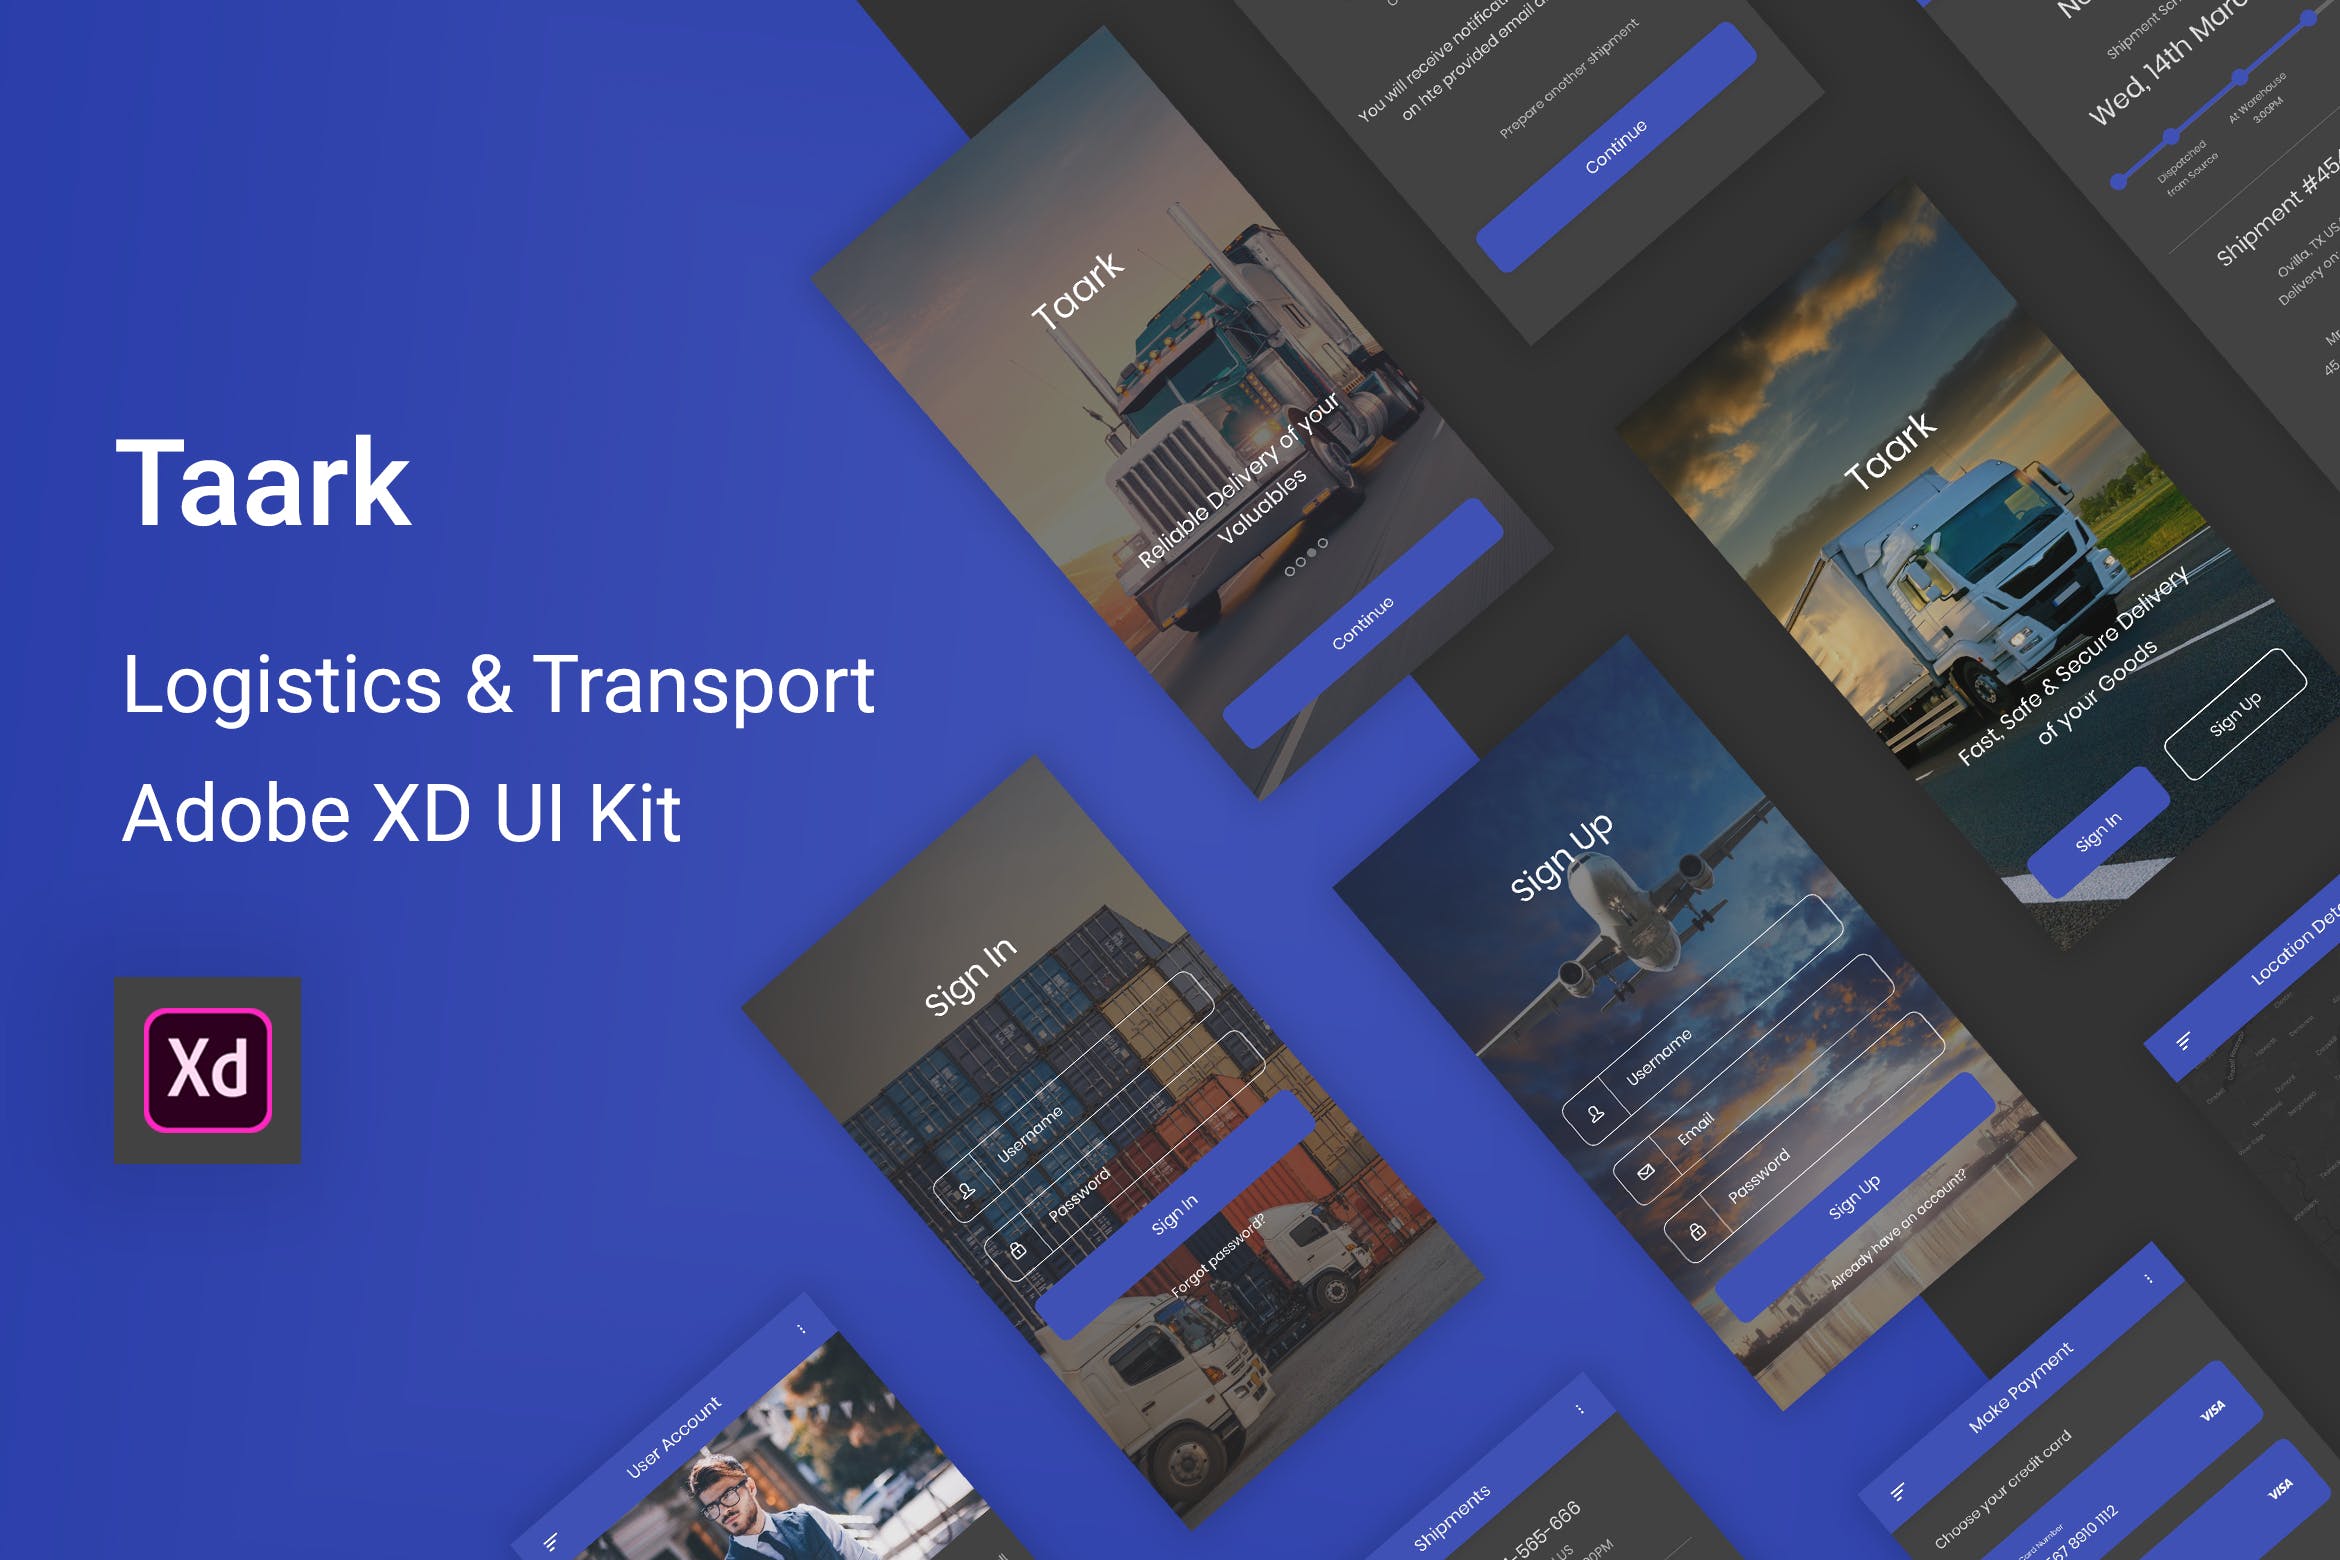 物流运输快递企业APP应用UI设计XD模板 Taark – Logistics & Transport Adobe XD UI Kit插图